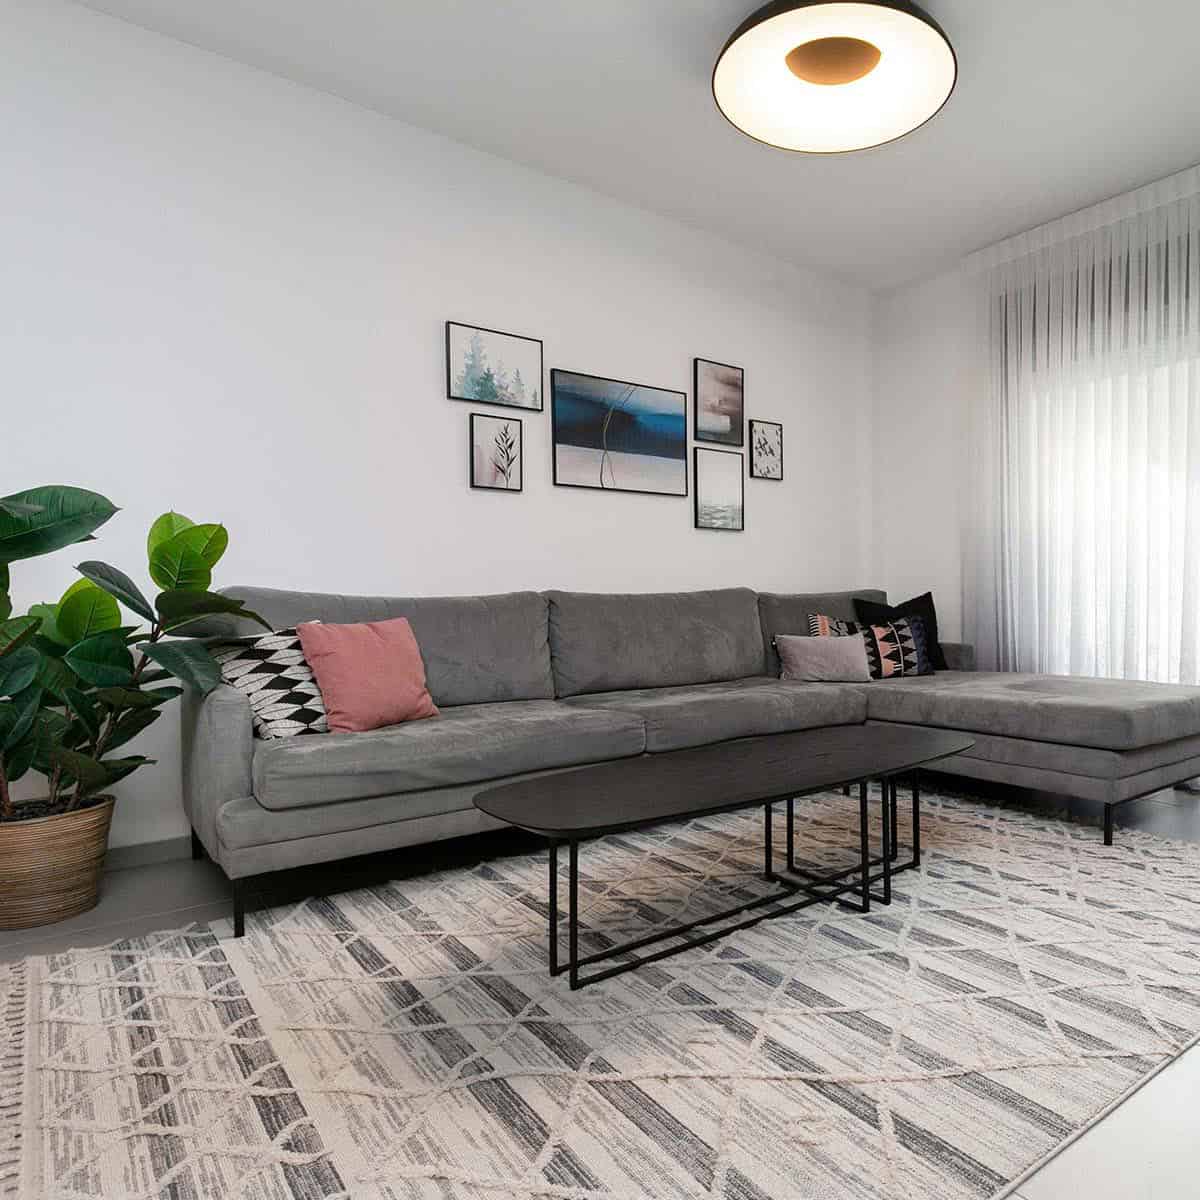 שטיח אטלס 03 אפור/קרם/אפור כהה עם פרנזים | השטיח האדום | עיצוב: מיכל מייזליש, צילום: המל צילום 